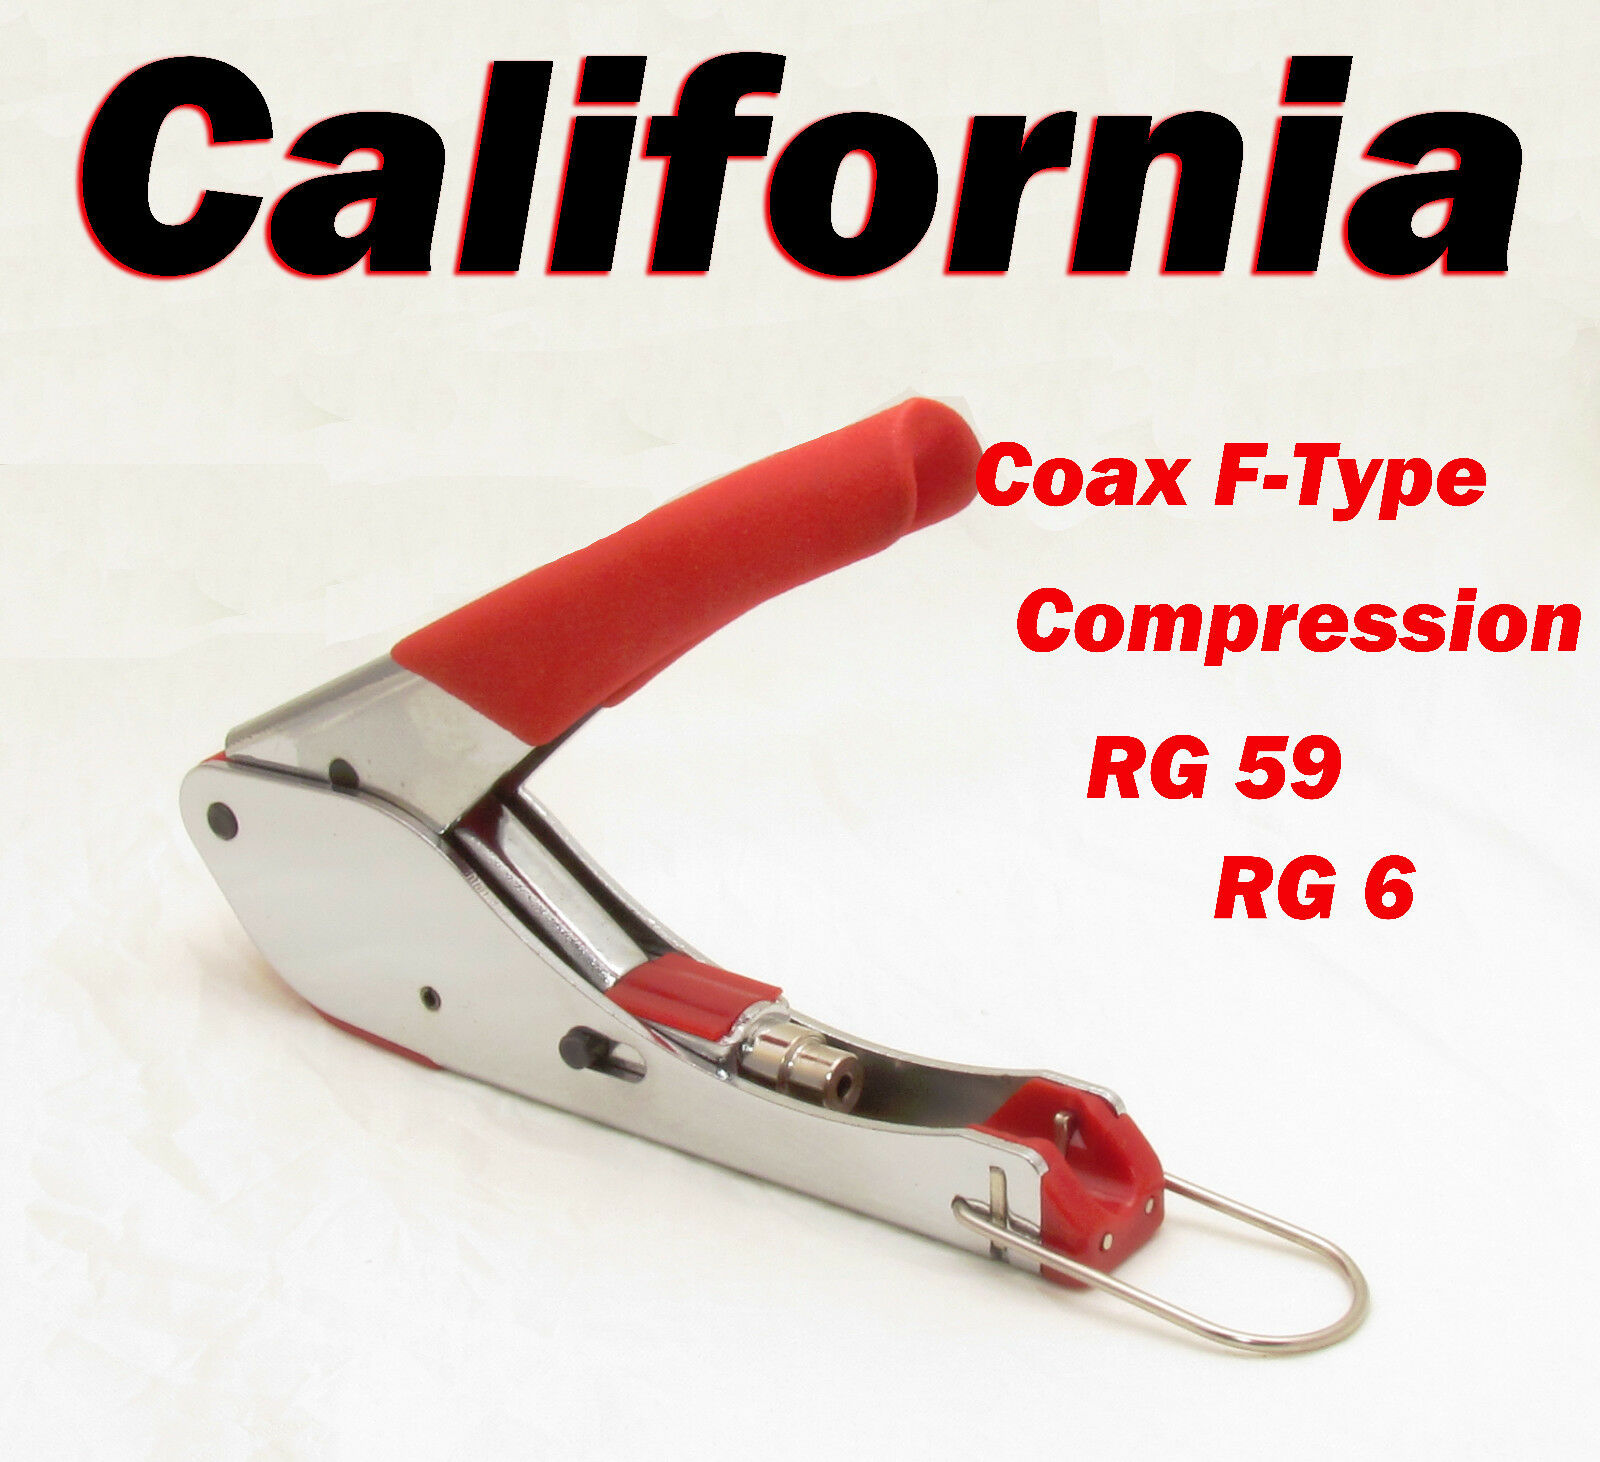 Compression Tool F Type Connector Coaxial Cable Crimper Rg59 Rg6 Coax Cctv Crimp